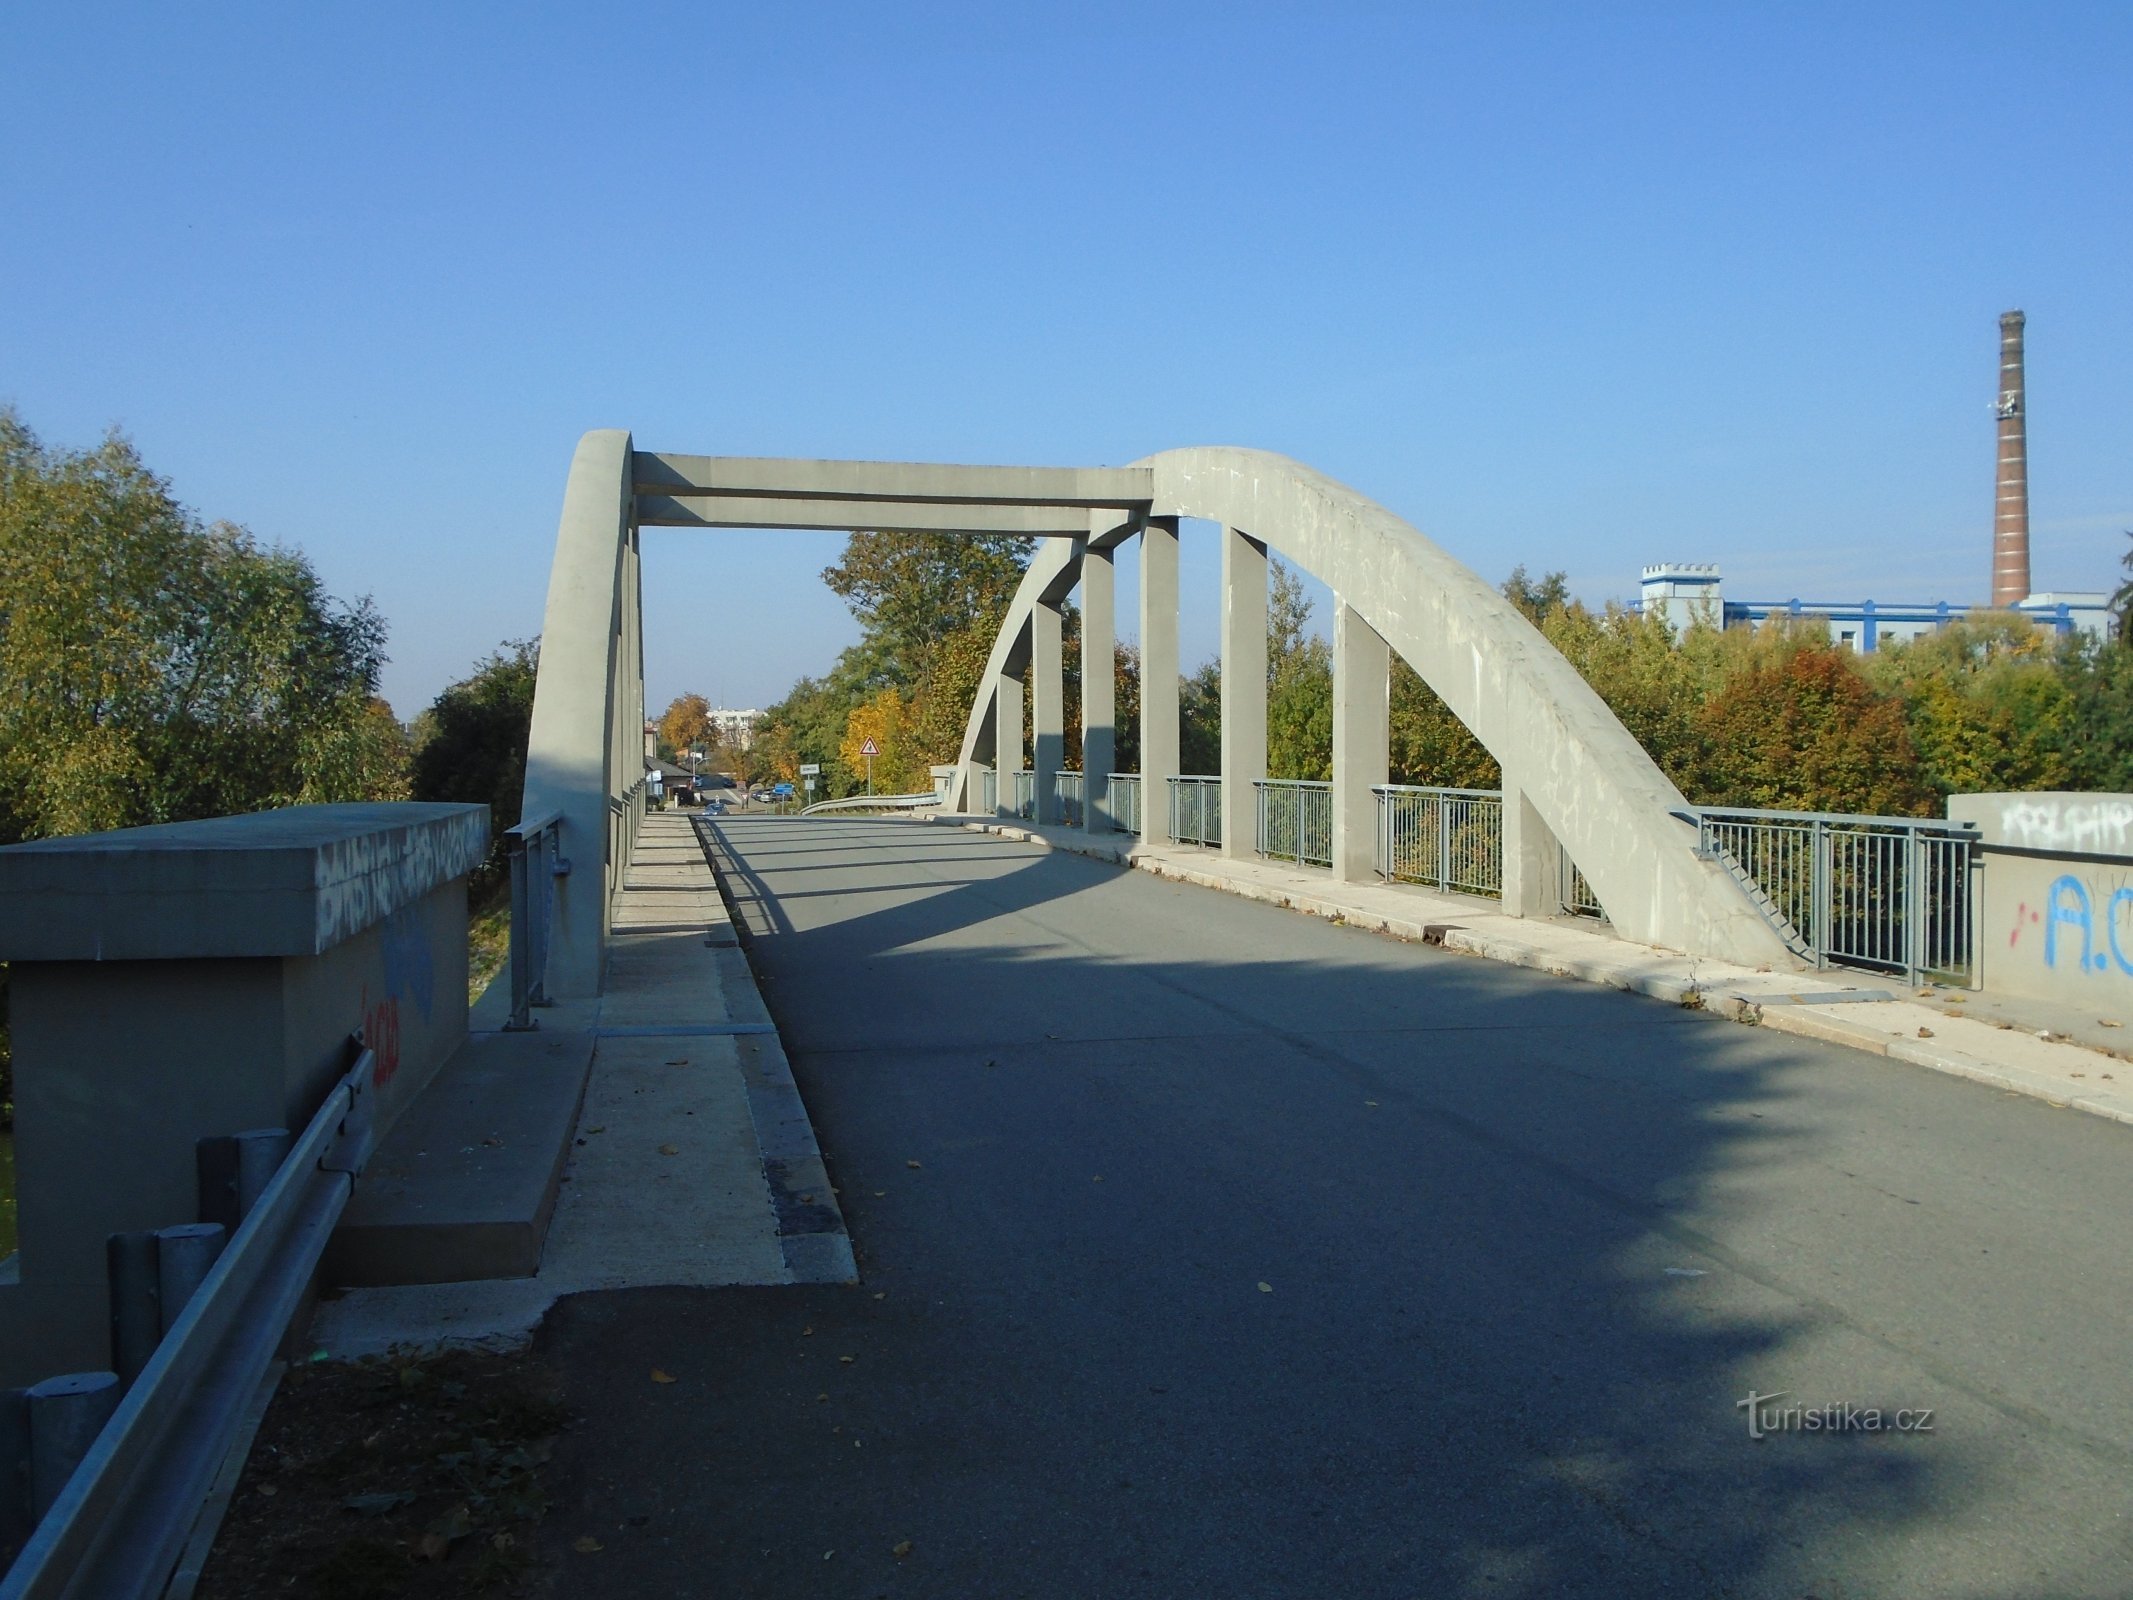 El puente actual sobre el Elba (Černožice, 10.10.2018/XNUMX/XNUMX)